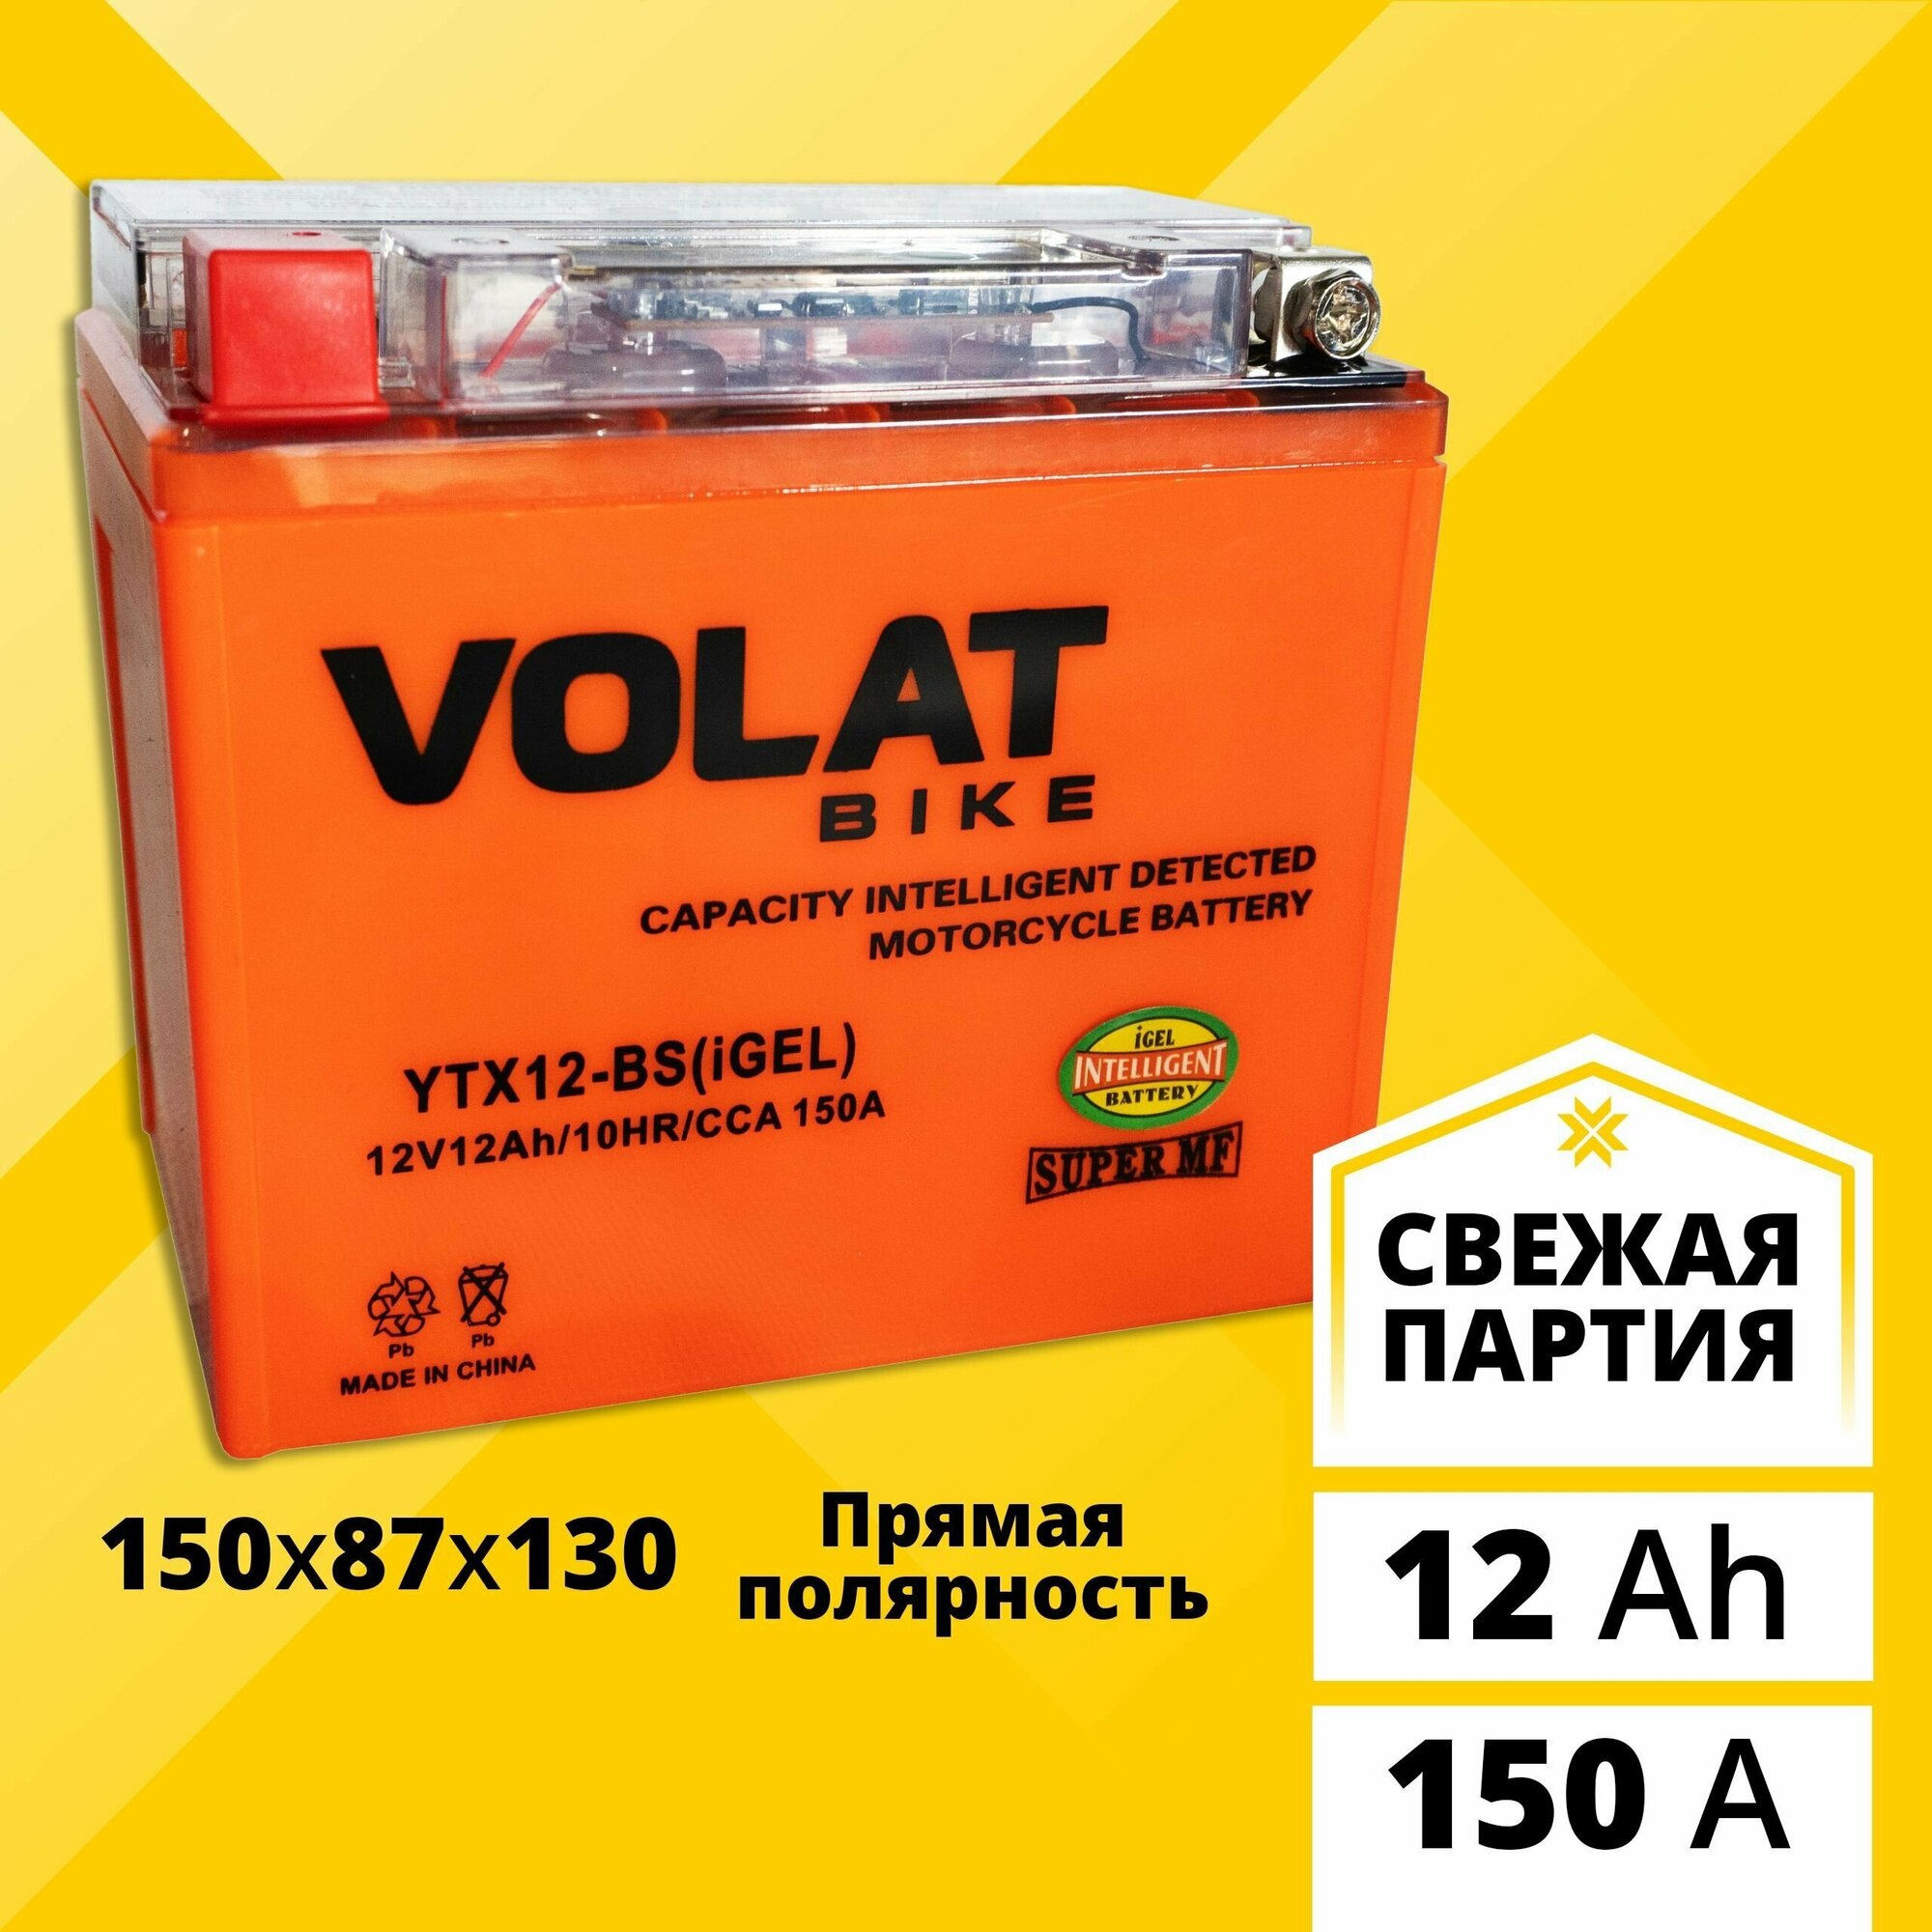 Аккумулятор для мотоцикла 12в гелевый 12 Ah 150 A прямая полярность VOLAT YTX12-BS(iGEL) акб 12v GEL для мопеда скутера квадроцикла 150x87x130